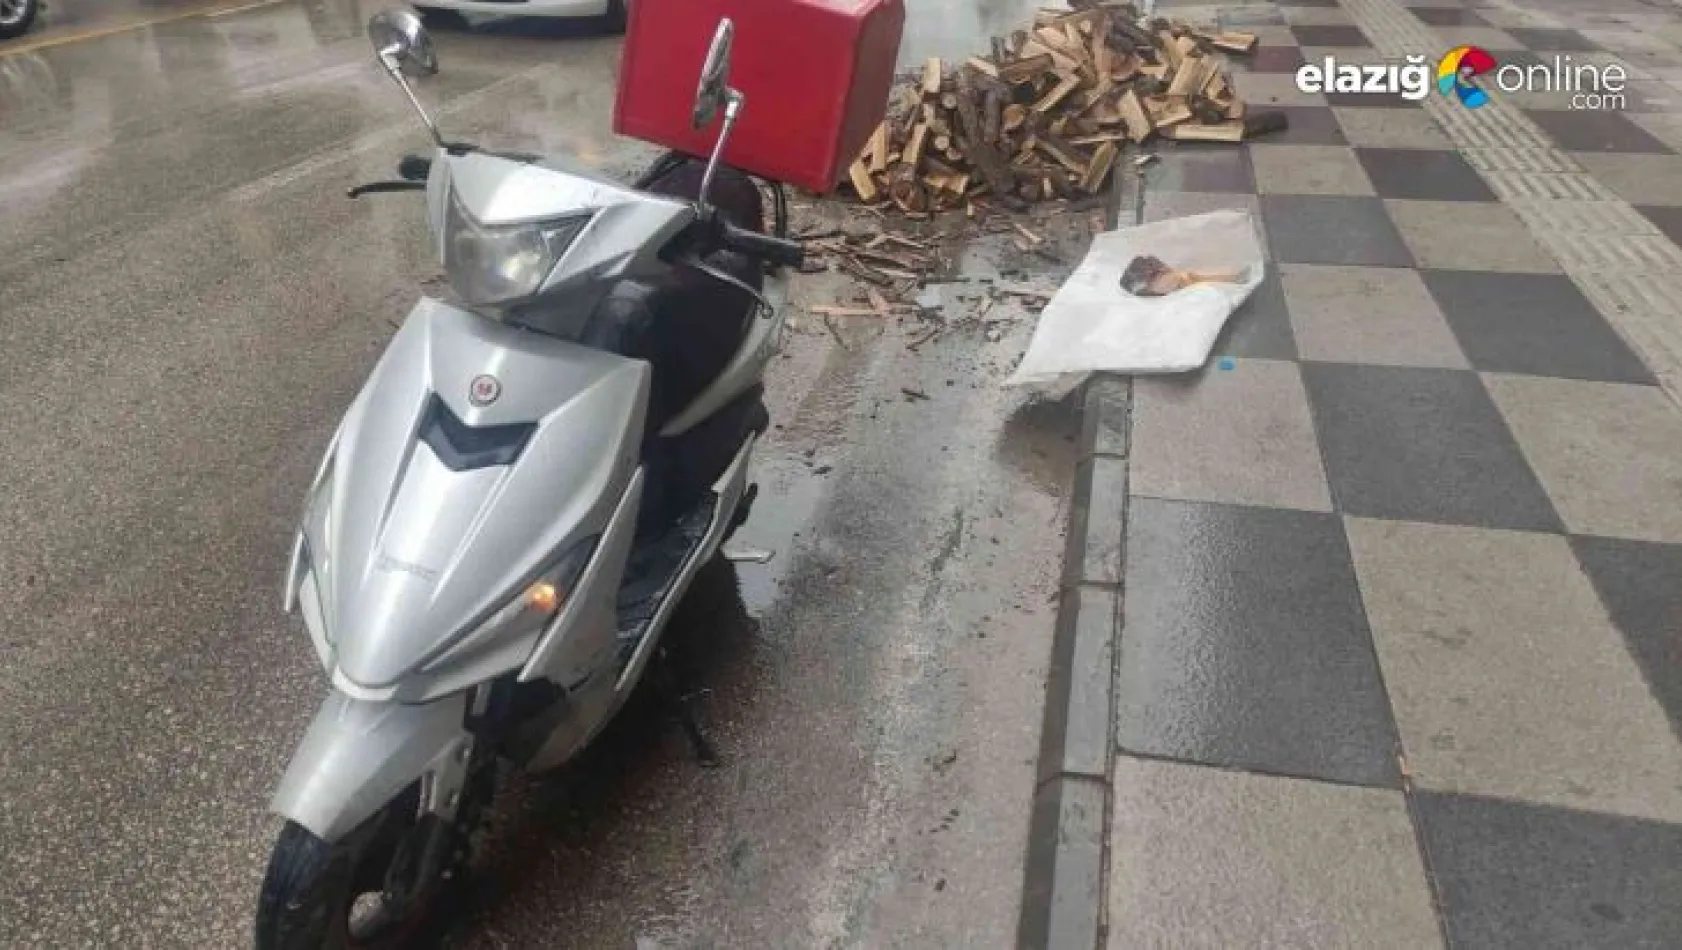 Odunlara çarpmamak için manevra yapan motosiklet devrildi